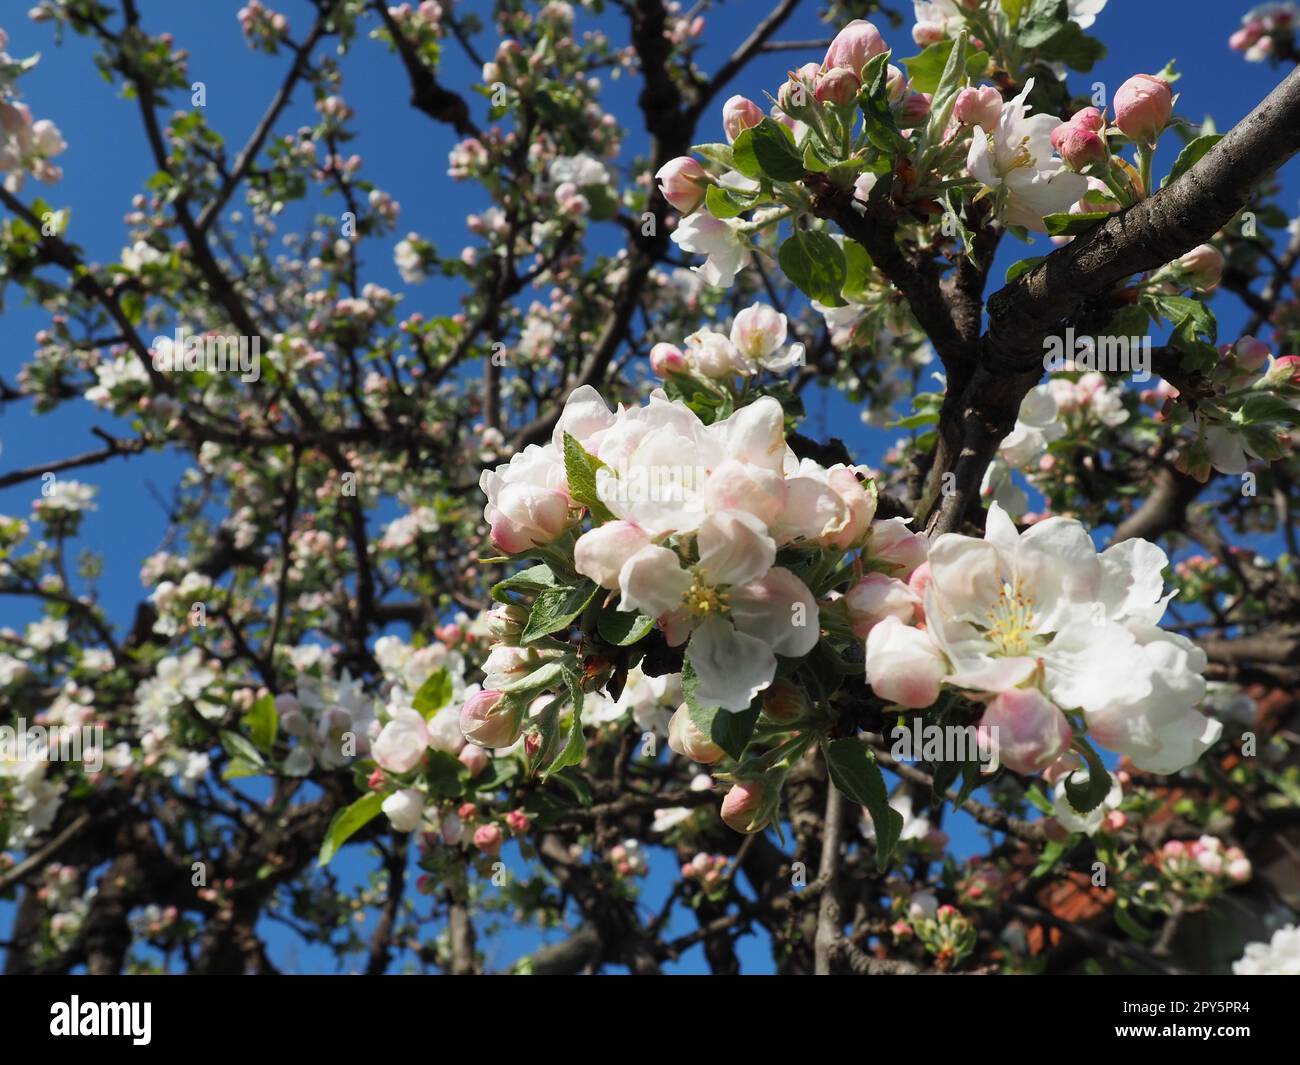 Blühende Blumen auf dem Apfelbaum. Apfelbaum in Blüte. Weiße und rosafarbene wunderschöne Blumen auf den Zweigen eines Baumes. Blauer Himmel und rote Dachziegel im Hintergrund. Frühlingsblüte Stockfoto